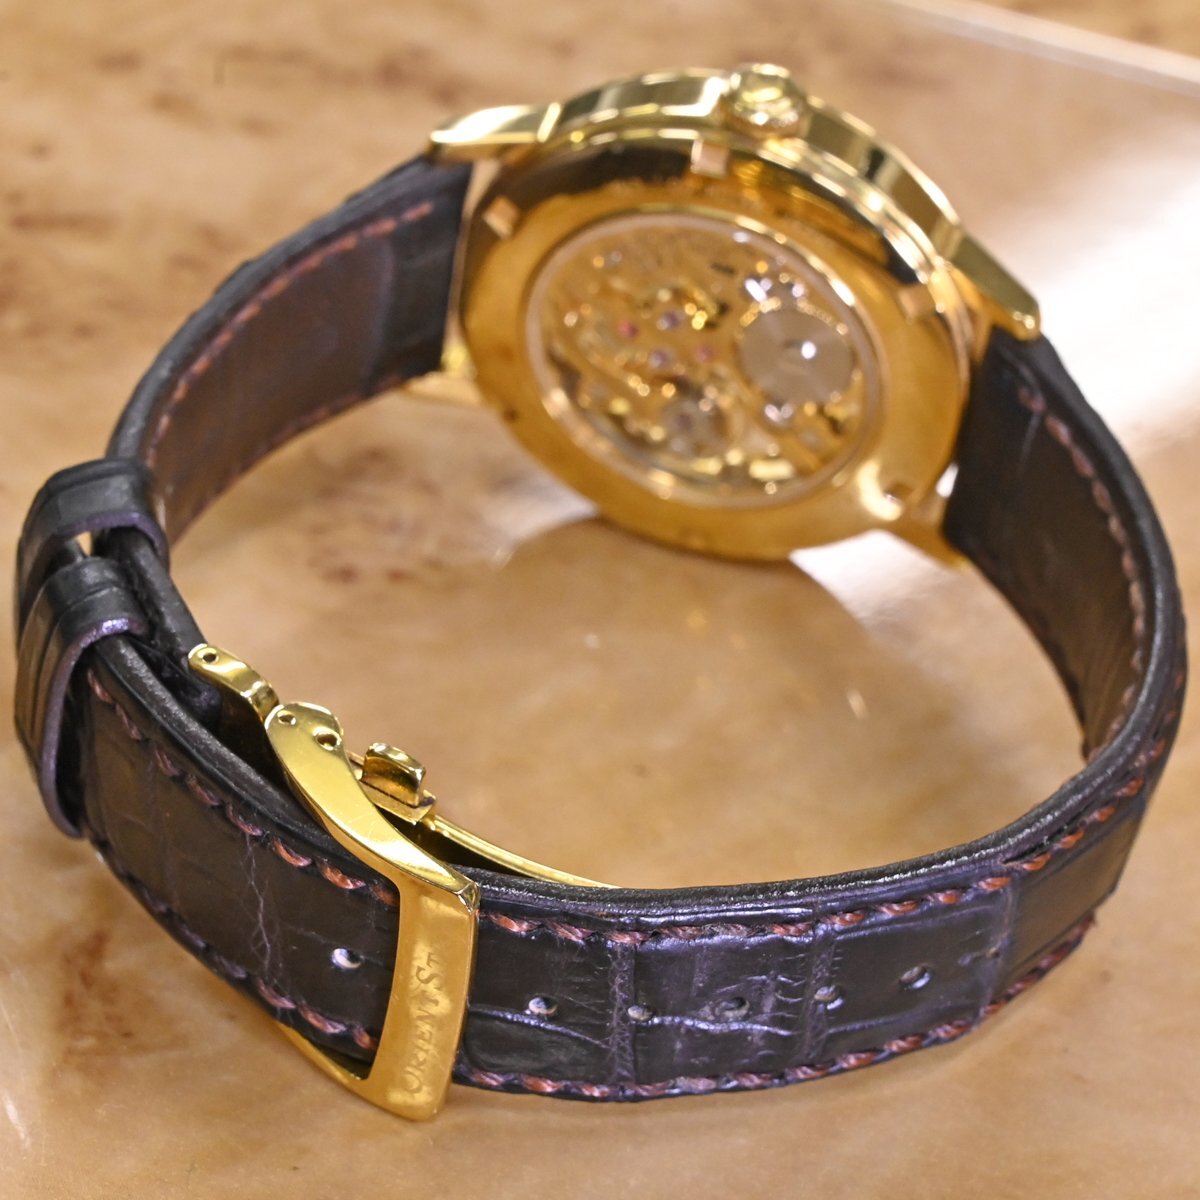 本物 美品 オリエント 定価270,000円 WZ0031DX スケルトン 手巻き腕時計 メンズウォッチ 保存箱 保証書 取説付 ORIENT STAR_画像6